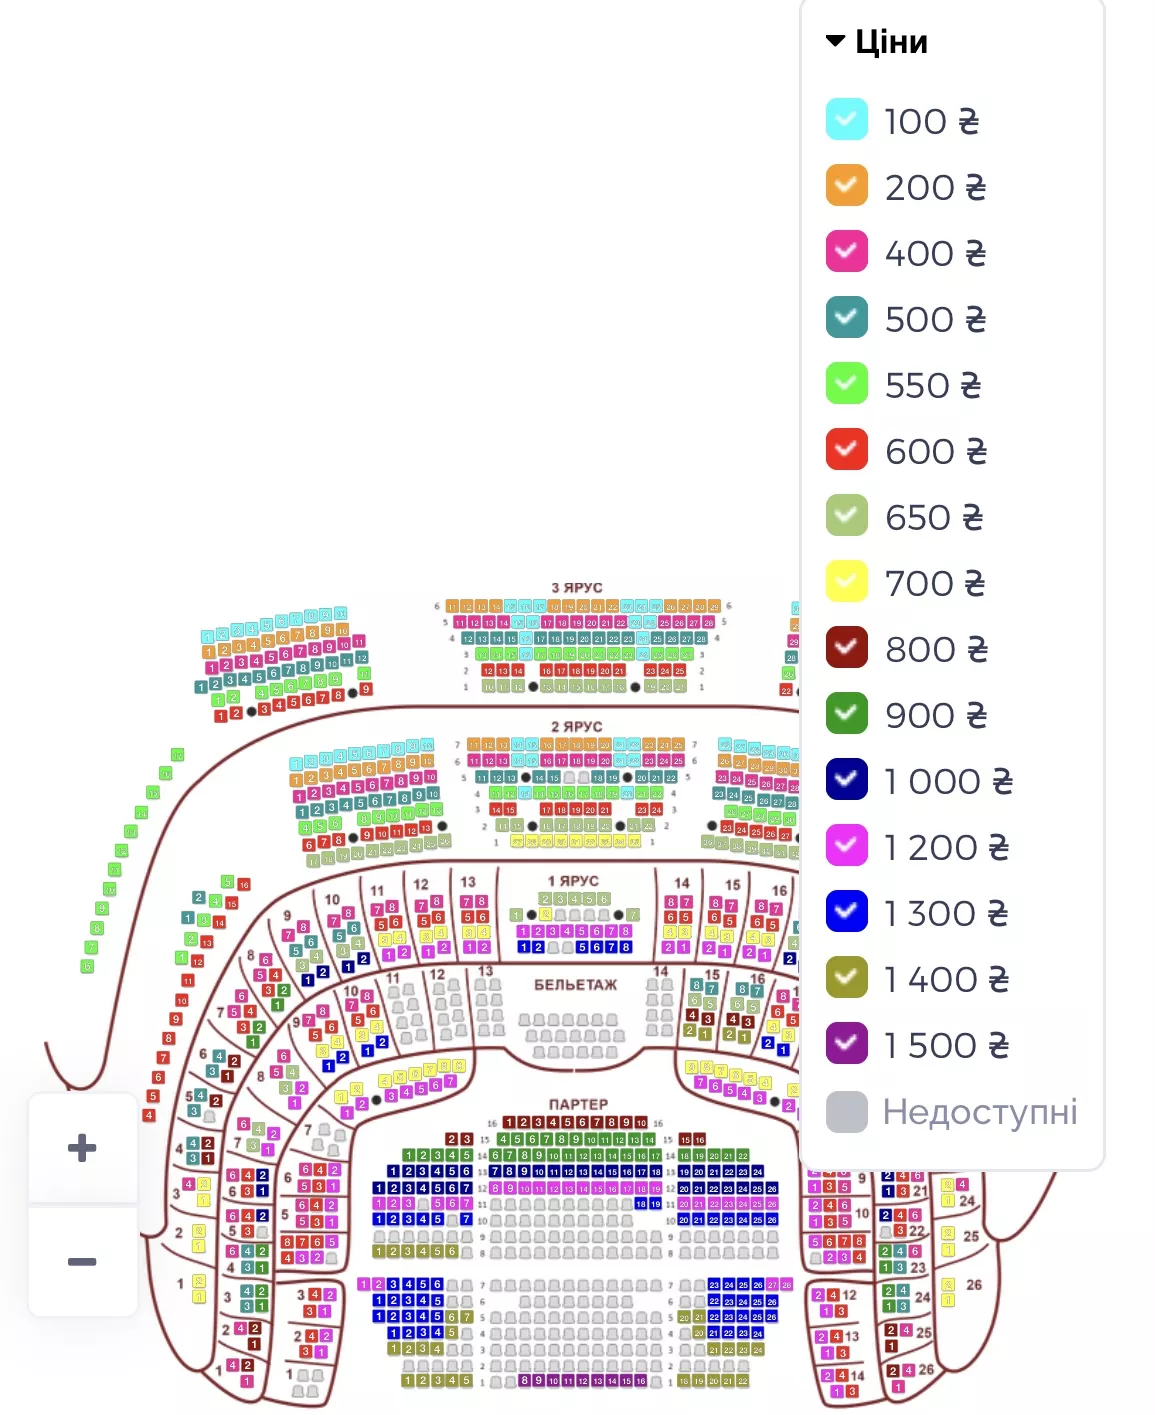 Цены на билеты на балет "Щелкунчик" на 30 декабря / Скриншот